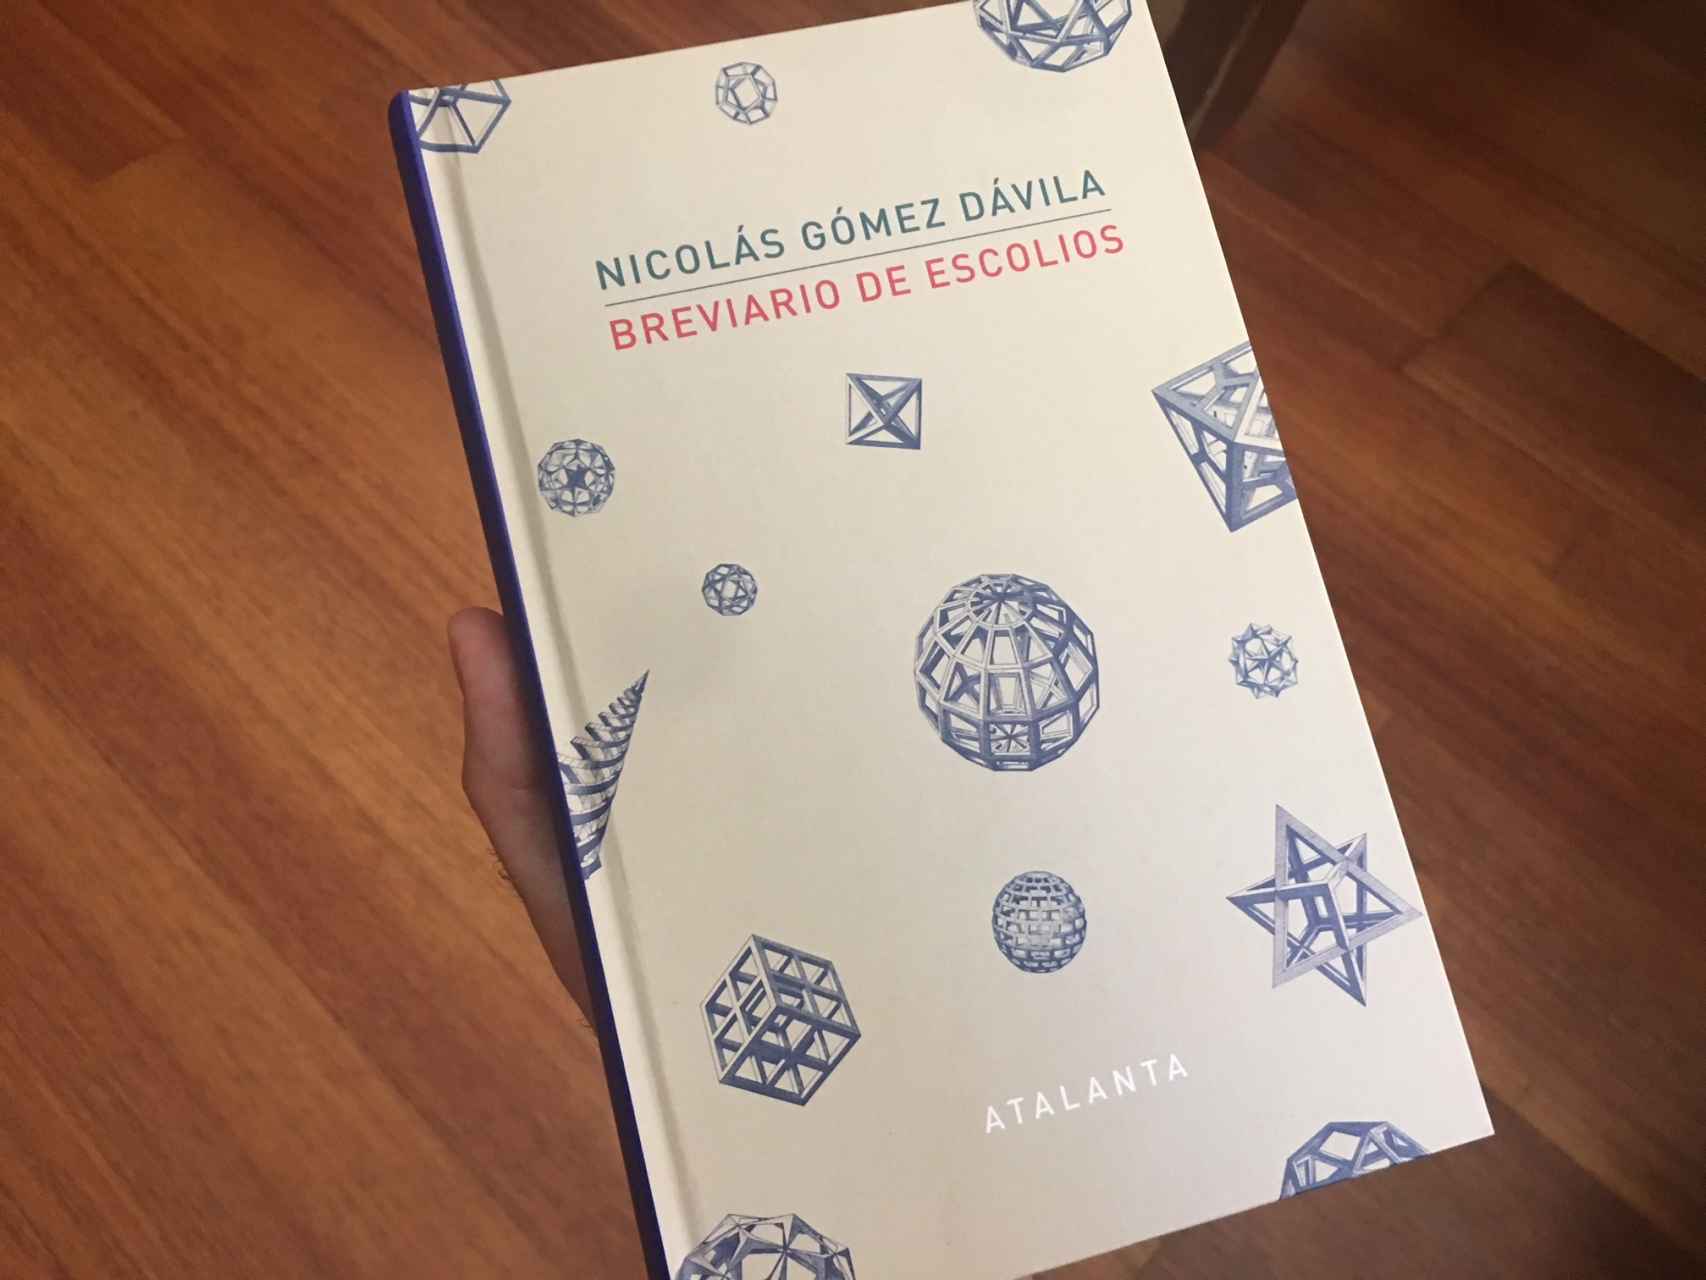 El libro Breviario de Escolios, de Nicolás Gómez Dávila.